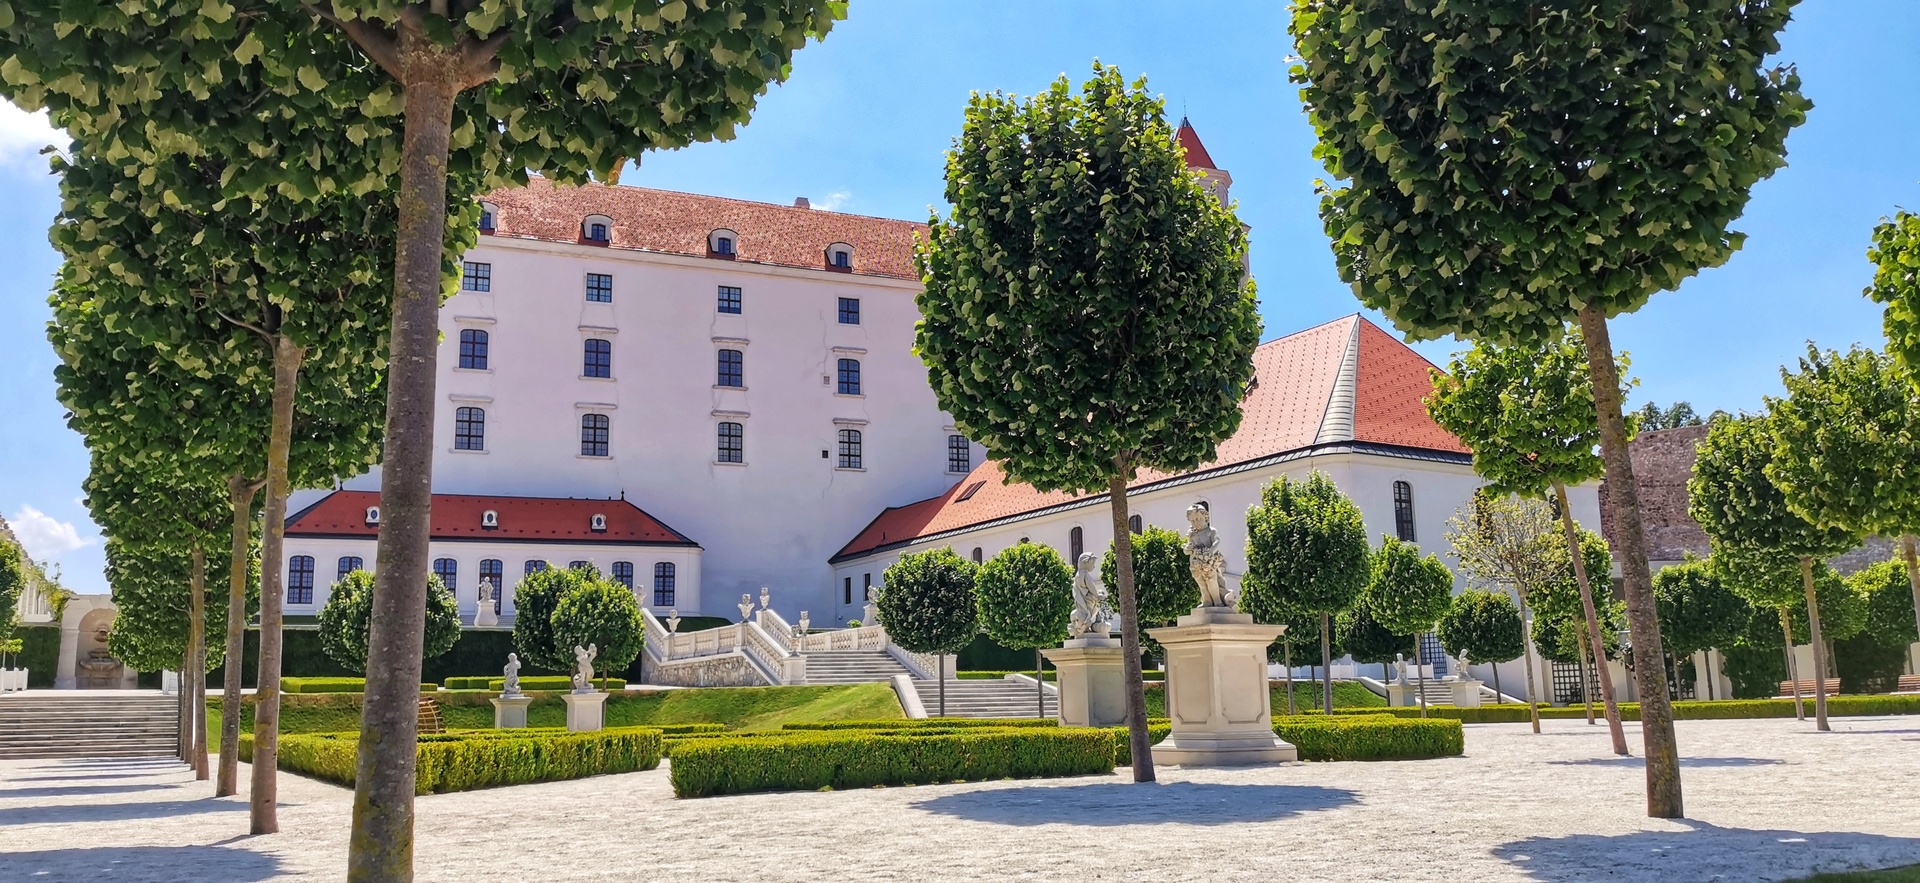 Bratislavský hrad - nádvorie